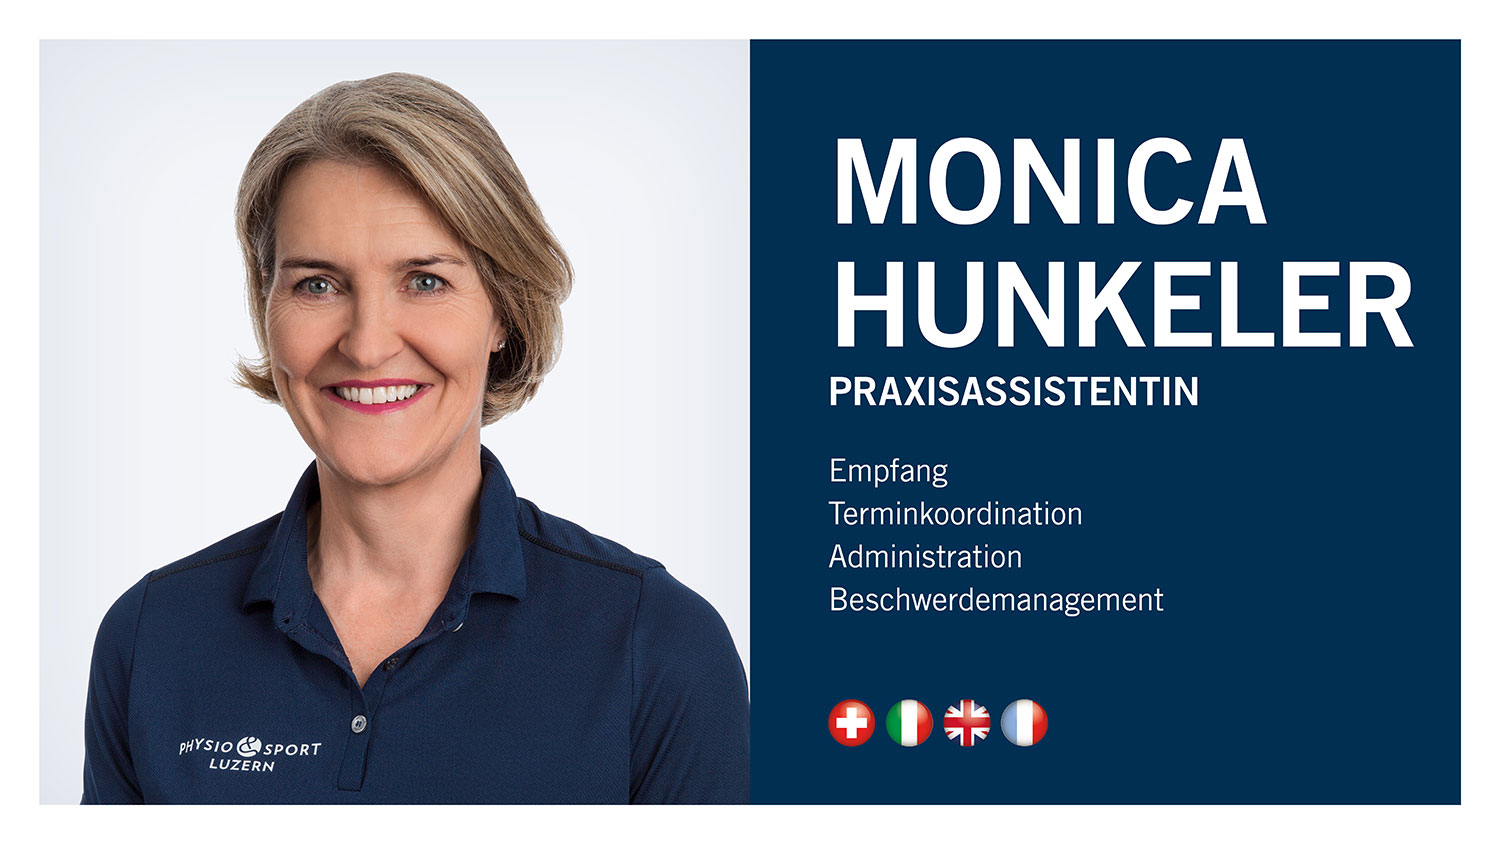 Physio Und Sport Luzern Monica Hunkeler